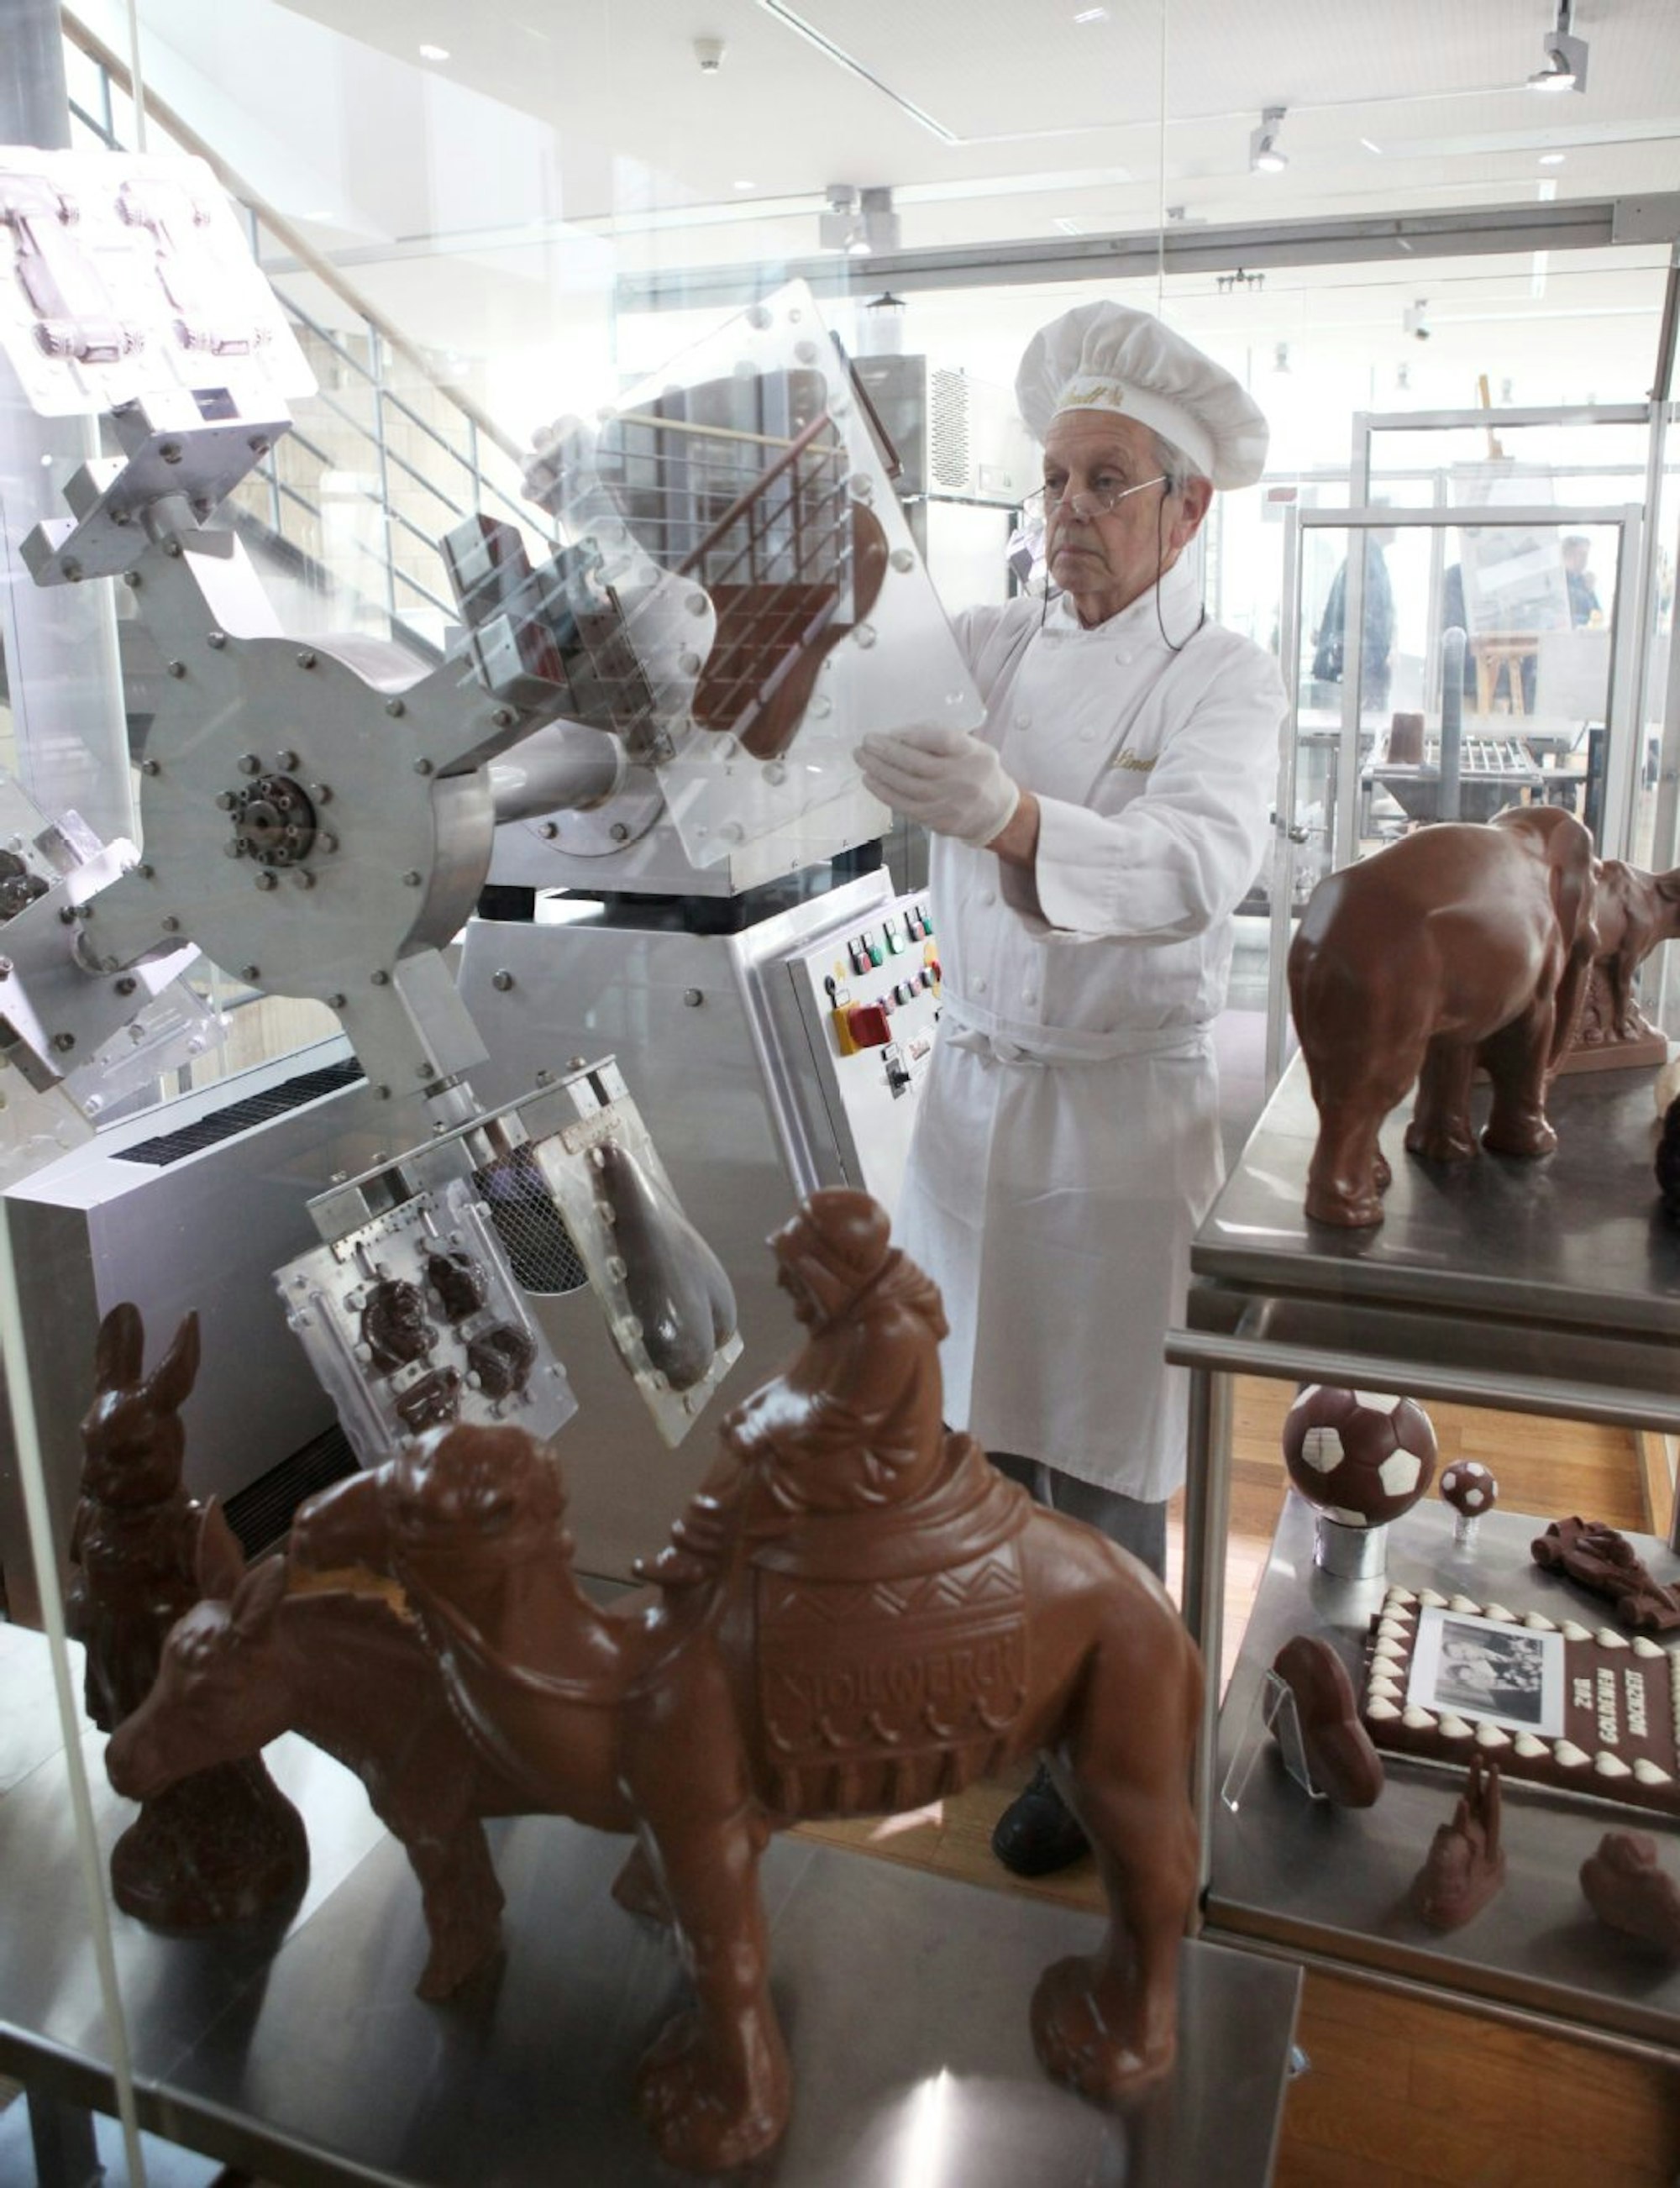 Hier dreht sich alles um die Schokolade! Von der Geschichte der Kakaobohne bis zur Produktion kann hier alles erlebt und gelernt werden. Das Schokoladenmuseum zählt zu den bestbesuchtesten Museen Deutschlands.